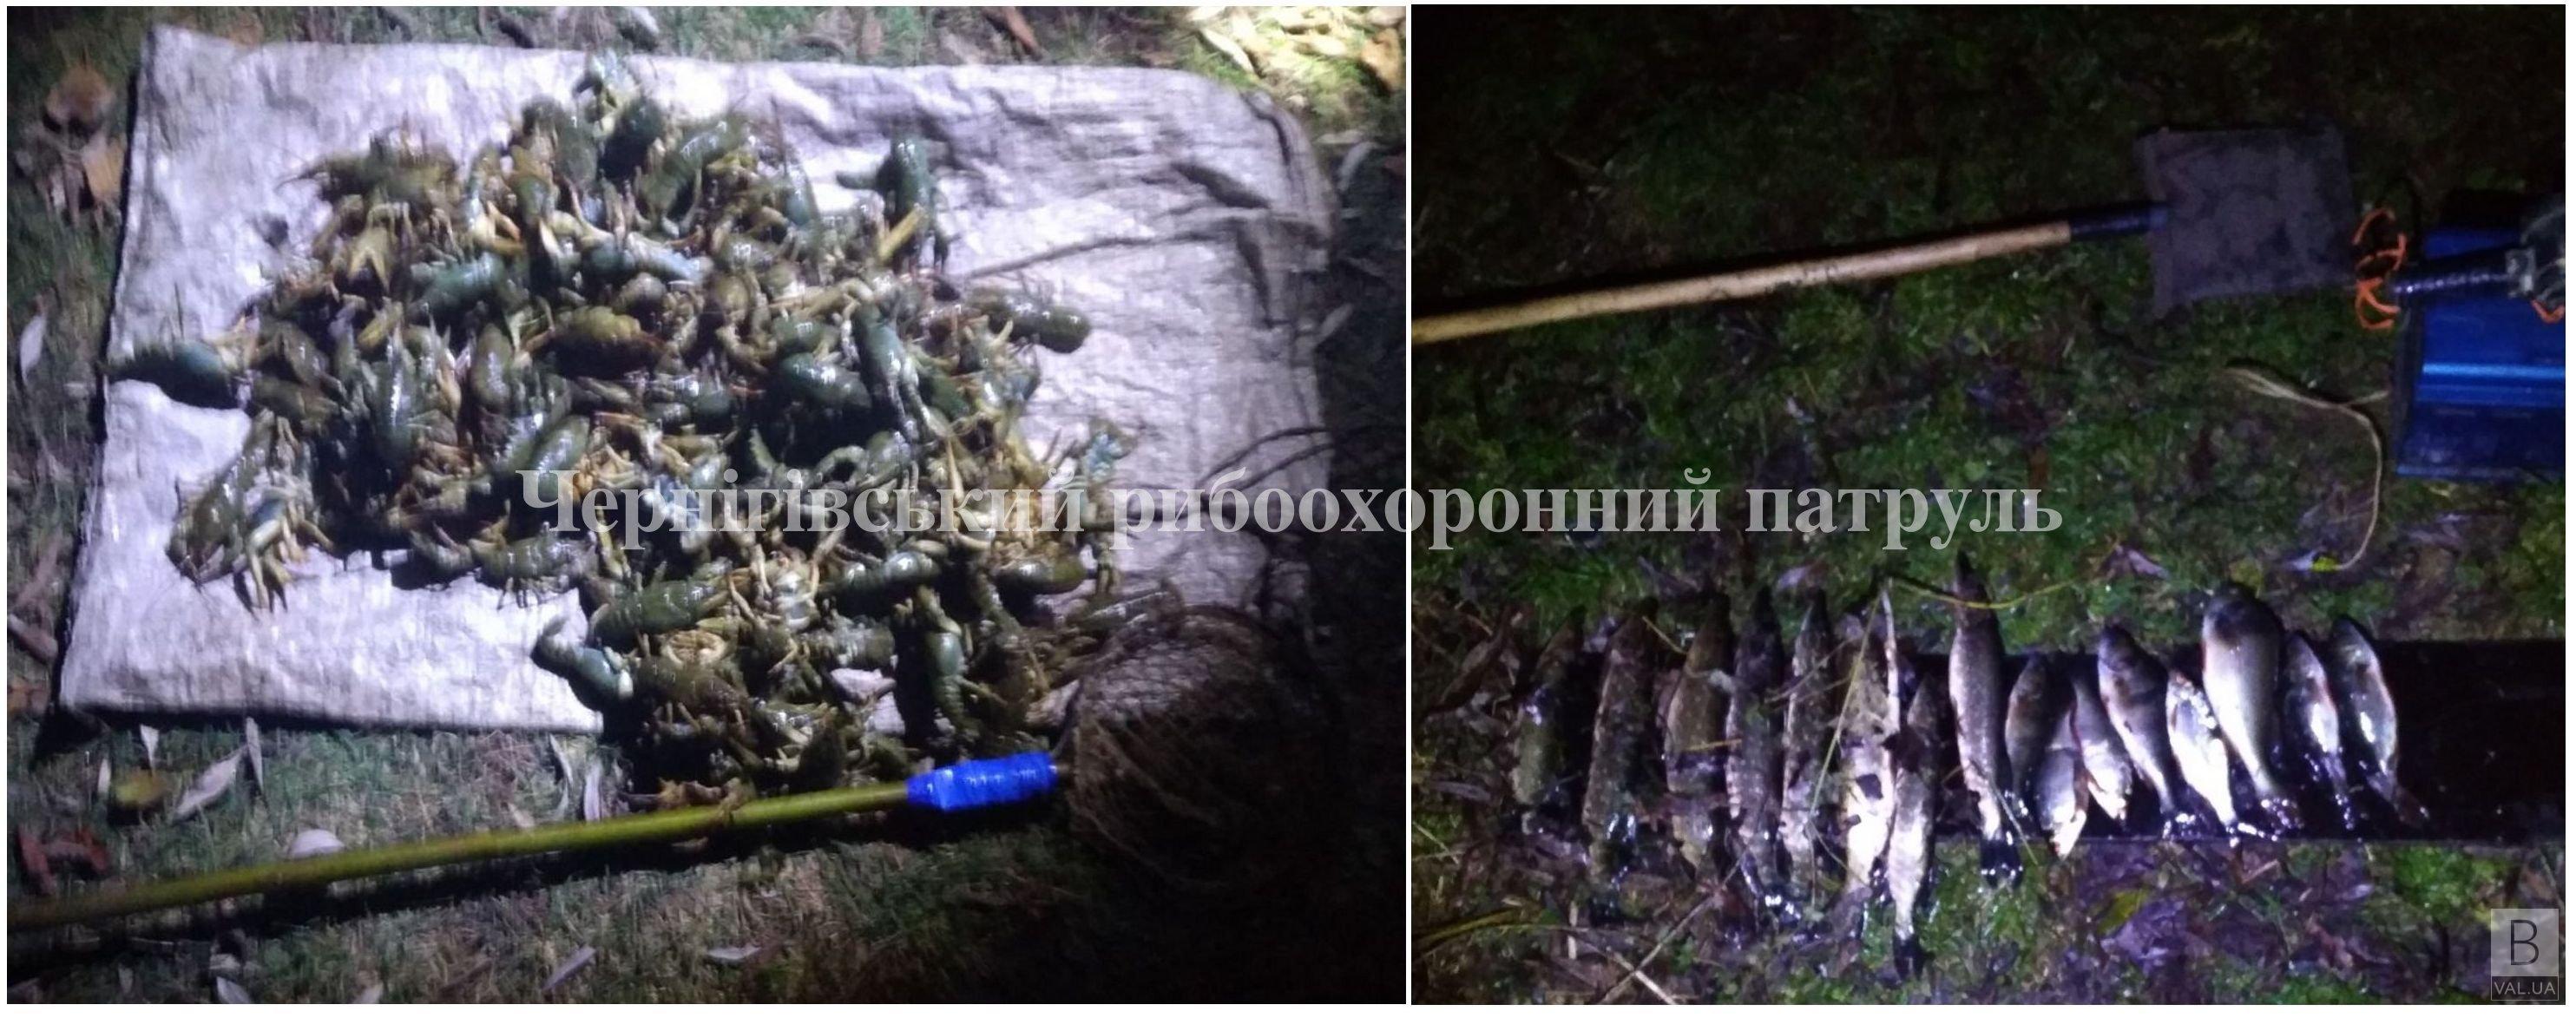 На Чернігівщині викрили браконьєра, який наловив раків майже в п'ять разів більше, ніж дозволено